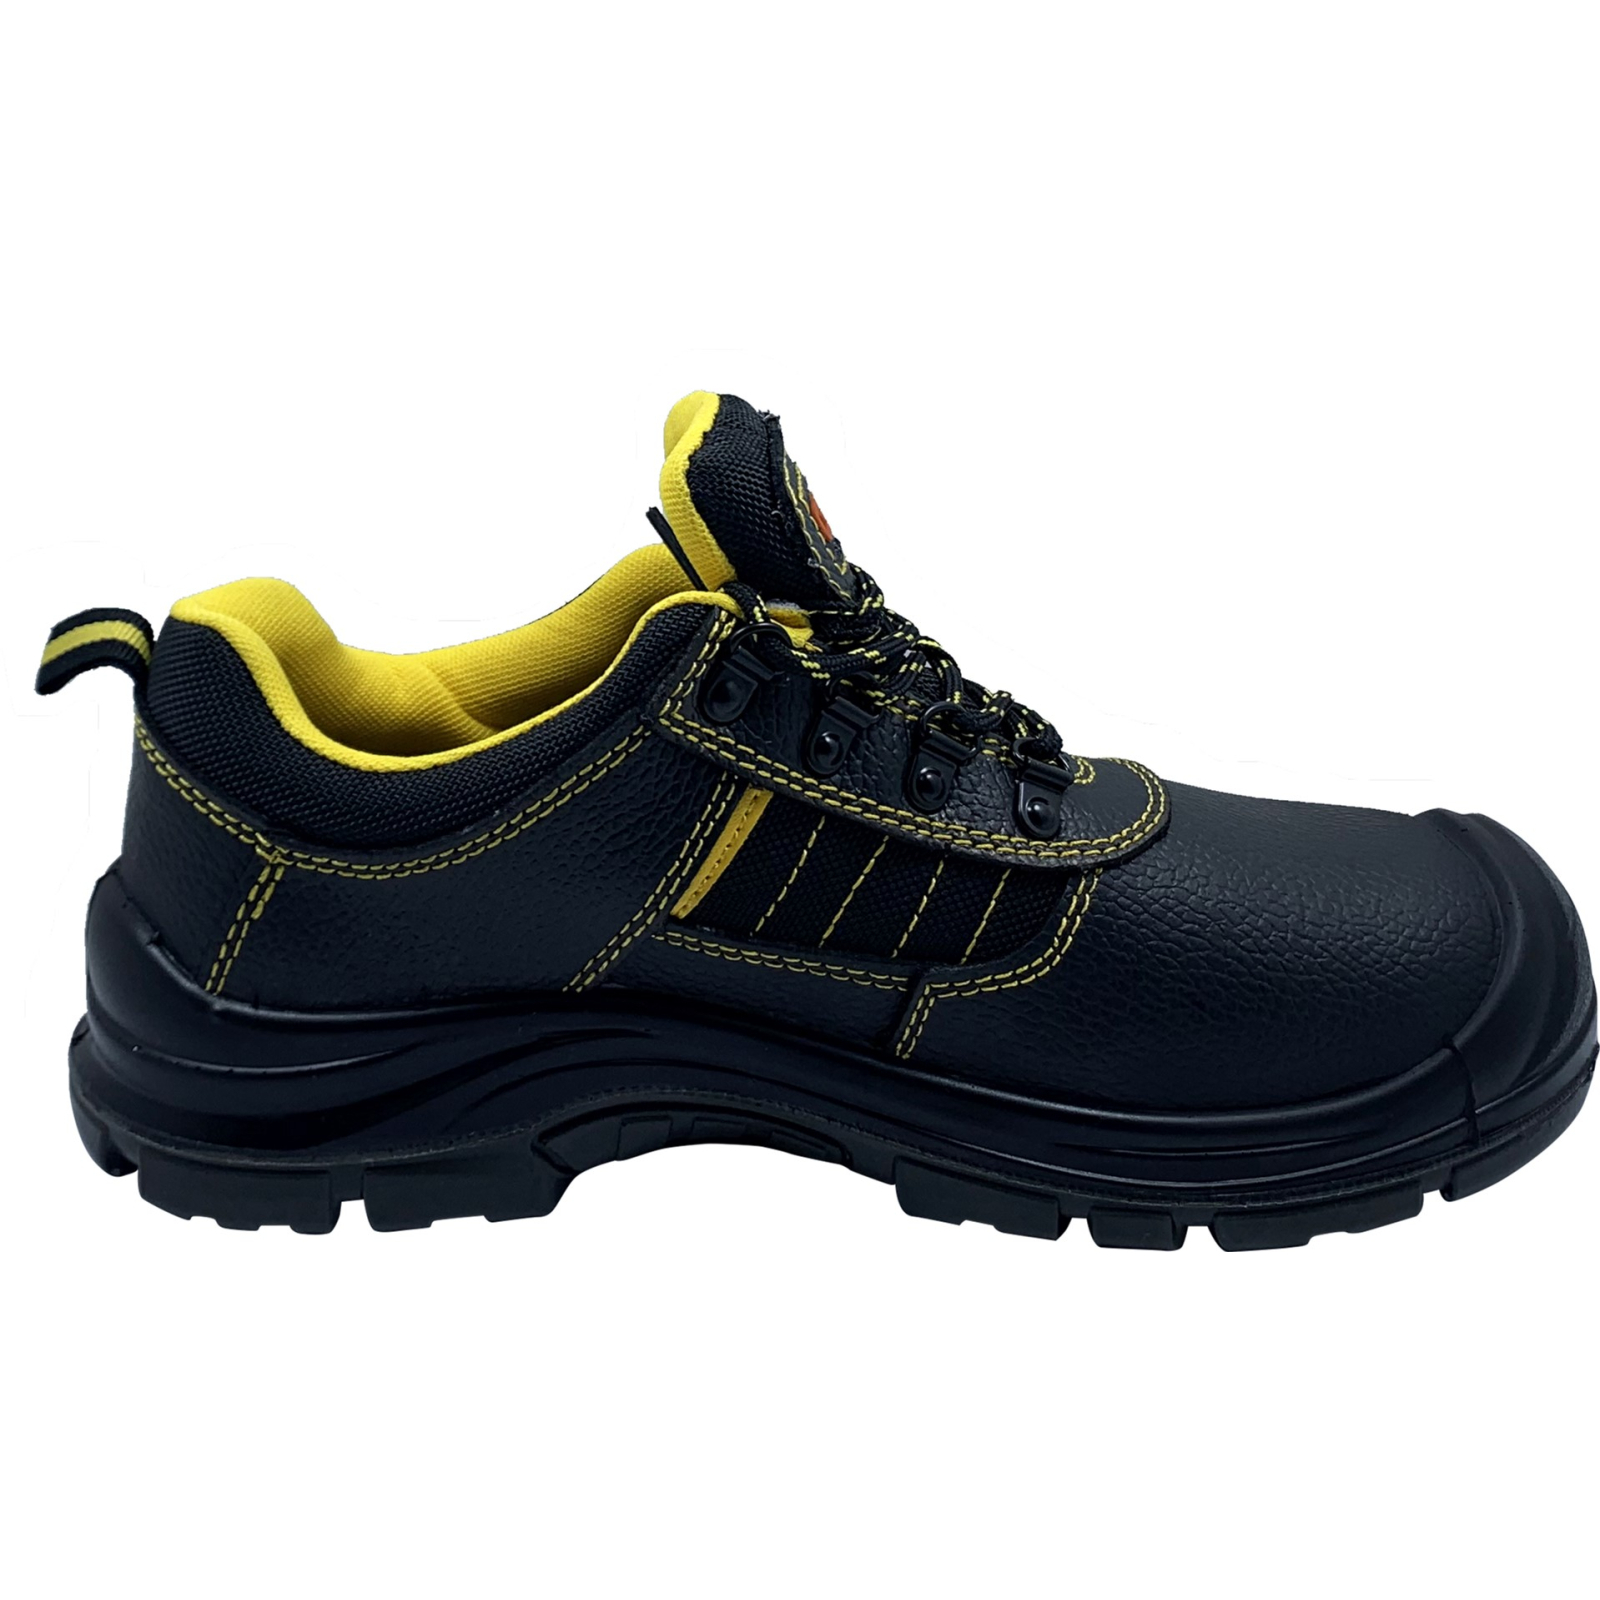 Ботинки рабочие GTM SM-078 мет. носок, р.43 с желтыми вставками (SM-078-43) изображение 2